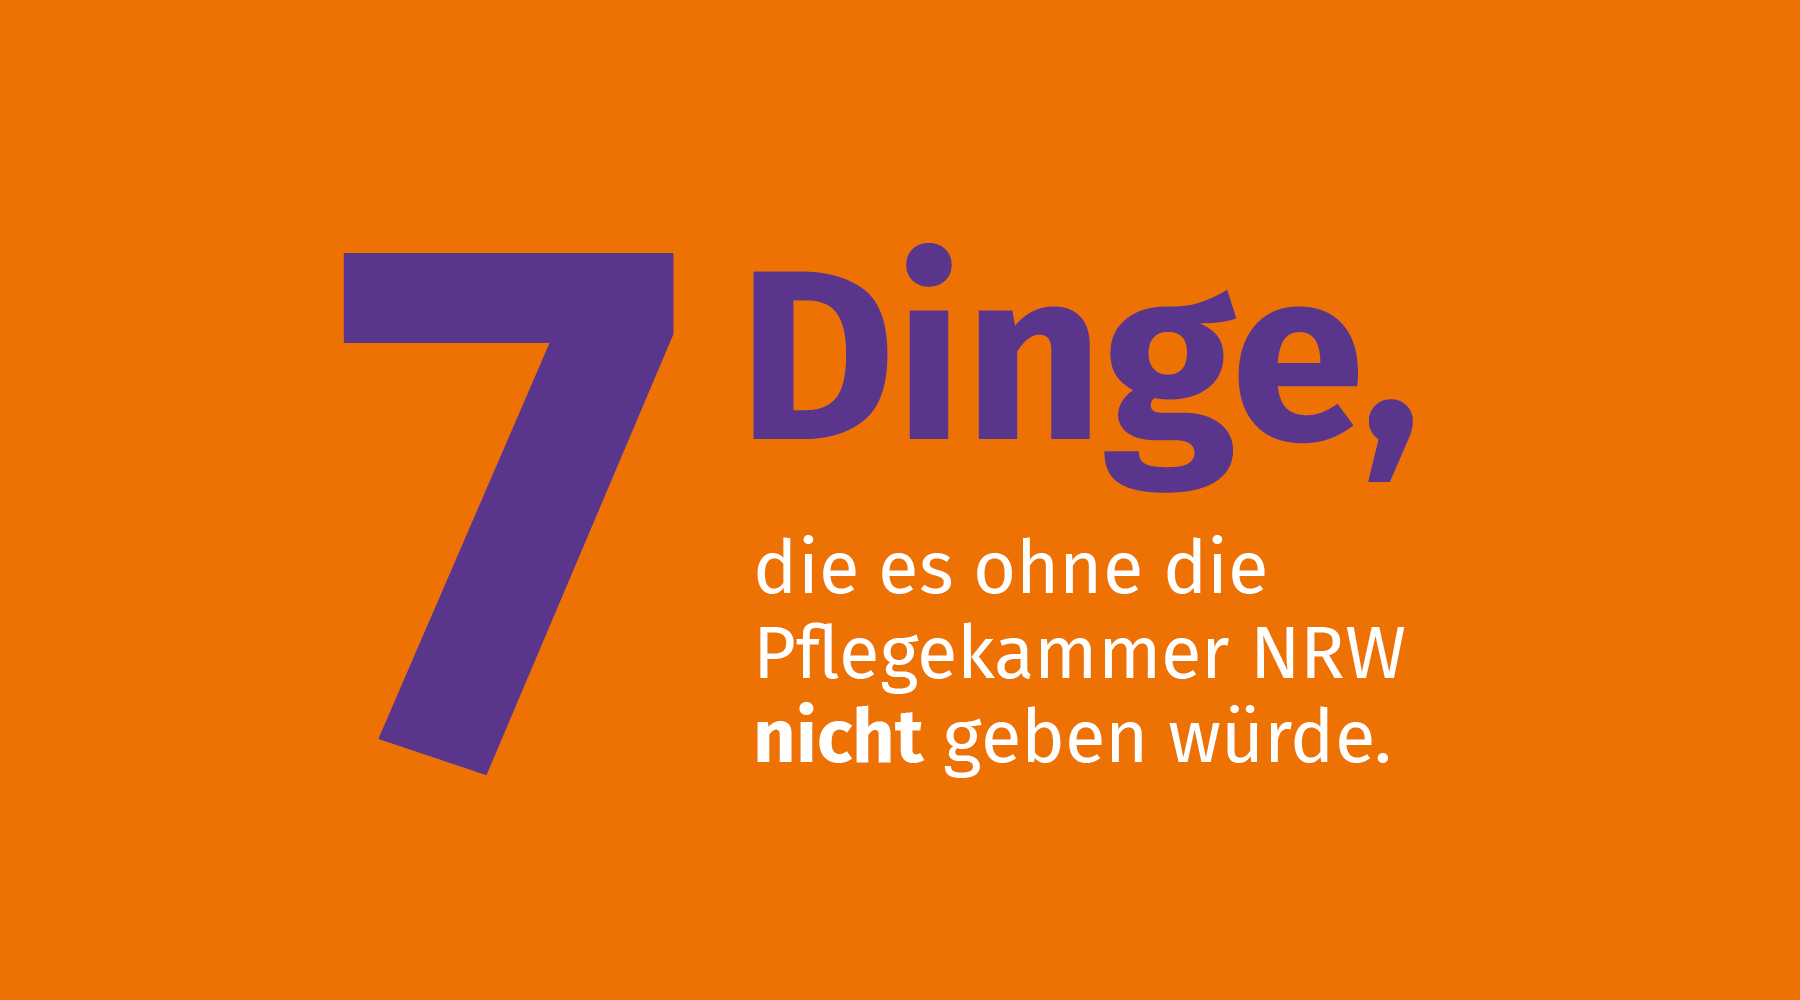 Text in der Grafik: 7 Dinge, die es ohne Pflegekammer NRW nicht geben würde.